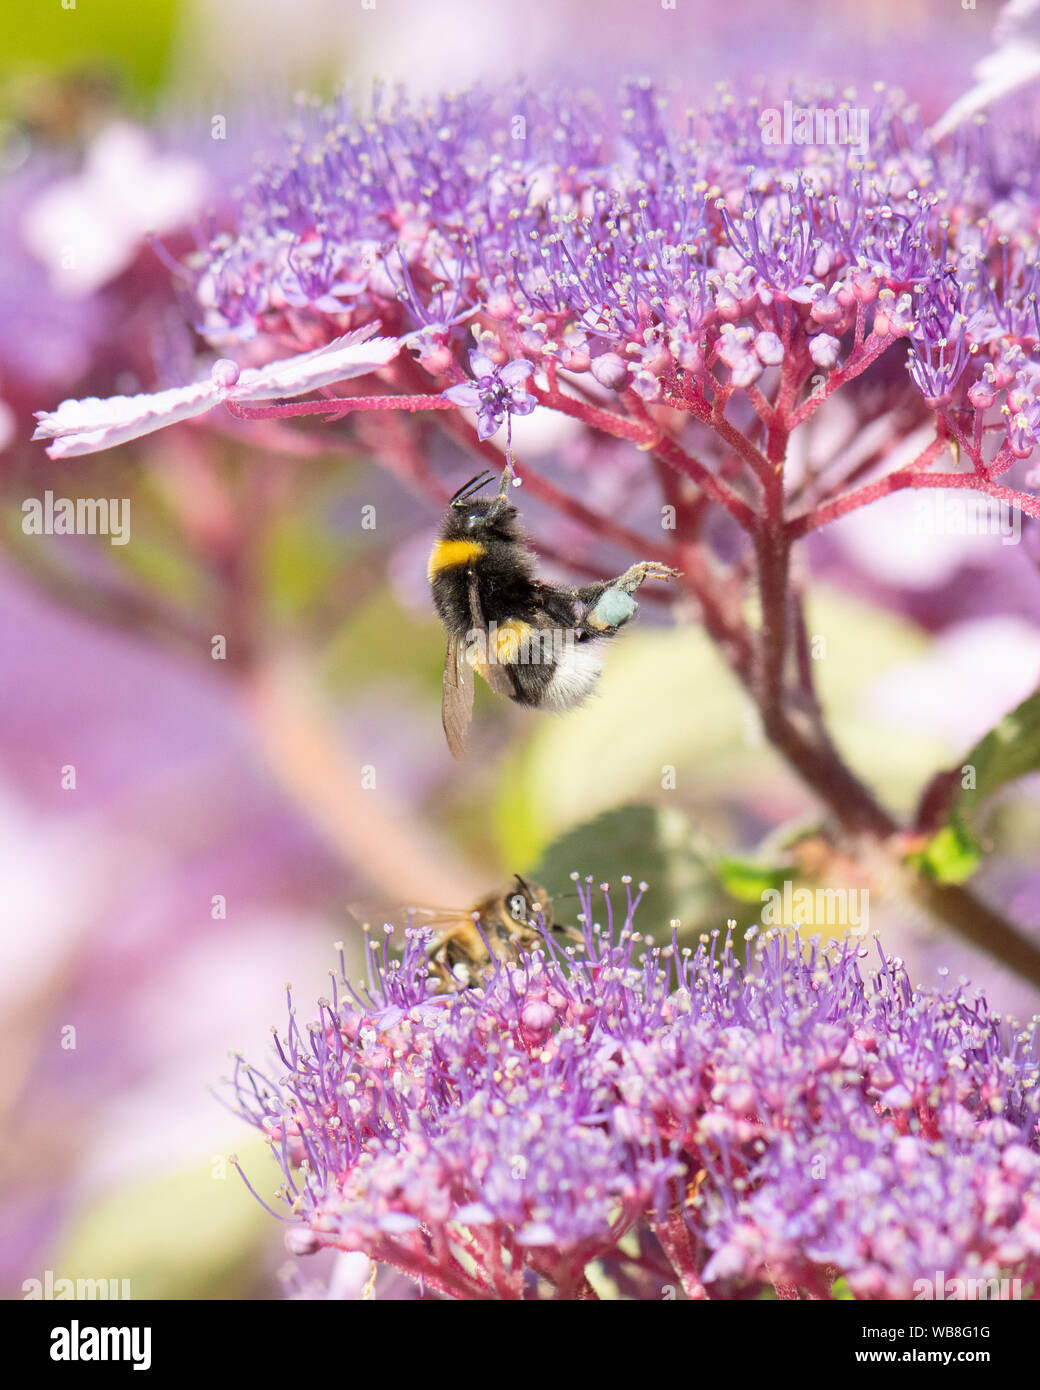 Killearn, Stirlingshire, Scotland, UK. Août 25, 2019. Royaume-uni - un bourdon avec du jaune et bleu corbeilles à pollen sur ses pattes perd son équilibre et s'accroche précairement sur une fleur d'hortensias à la hausse des températures dans un jardin Stirlingshire. Couleur du pollen varie selon l'espèce de plante dont le pollen d'abeilles et peut varier du blanc au bleu foncé Credit : Kay Roxby/Alamy Live News Banque D'Images